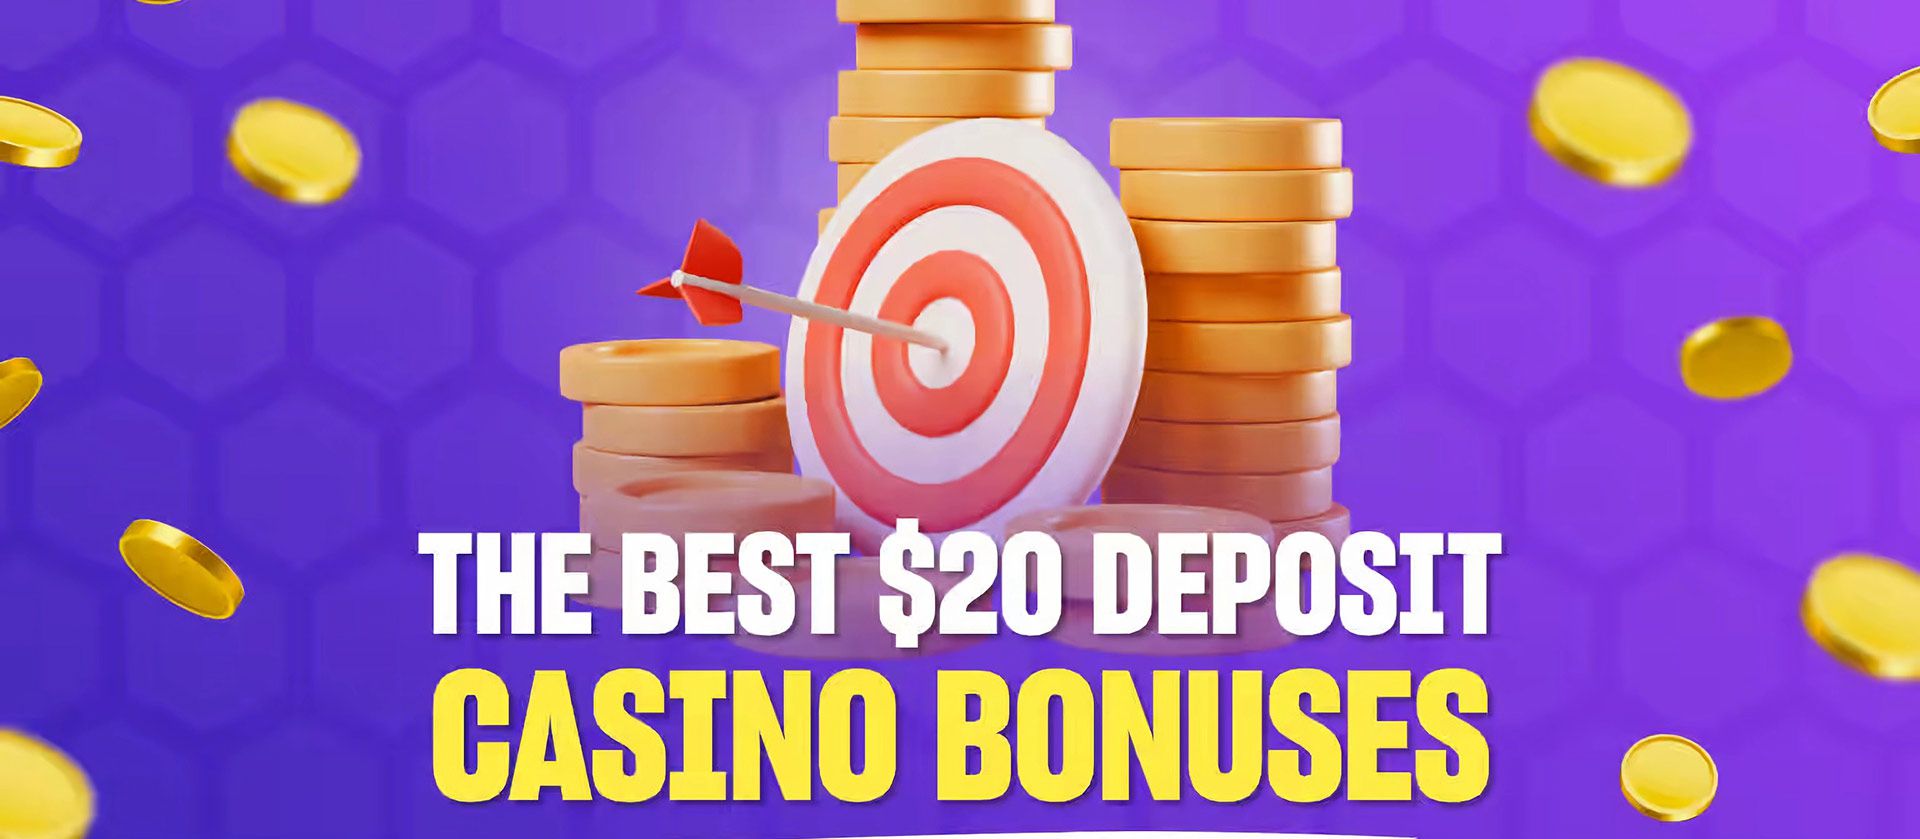 $20 deposit casino bonuses Canada.